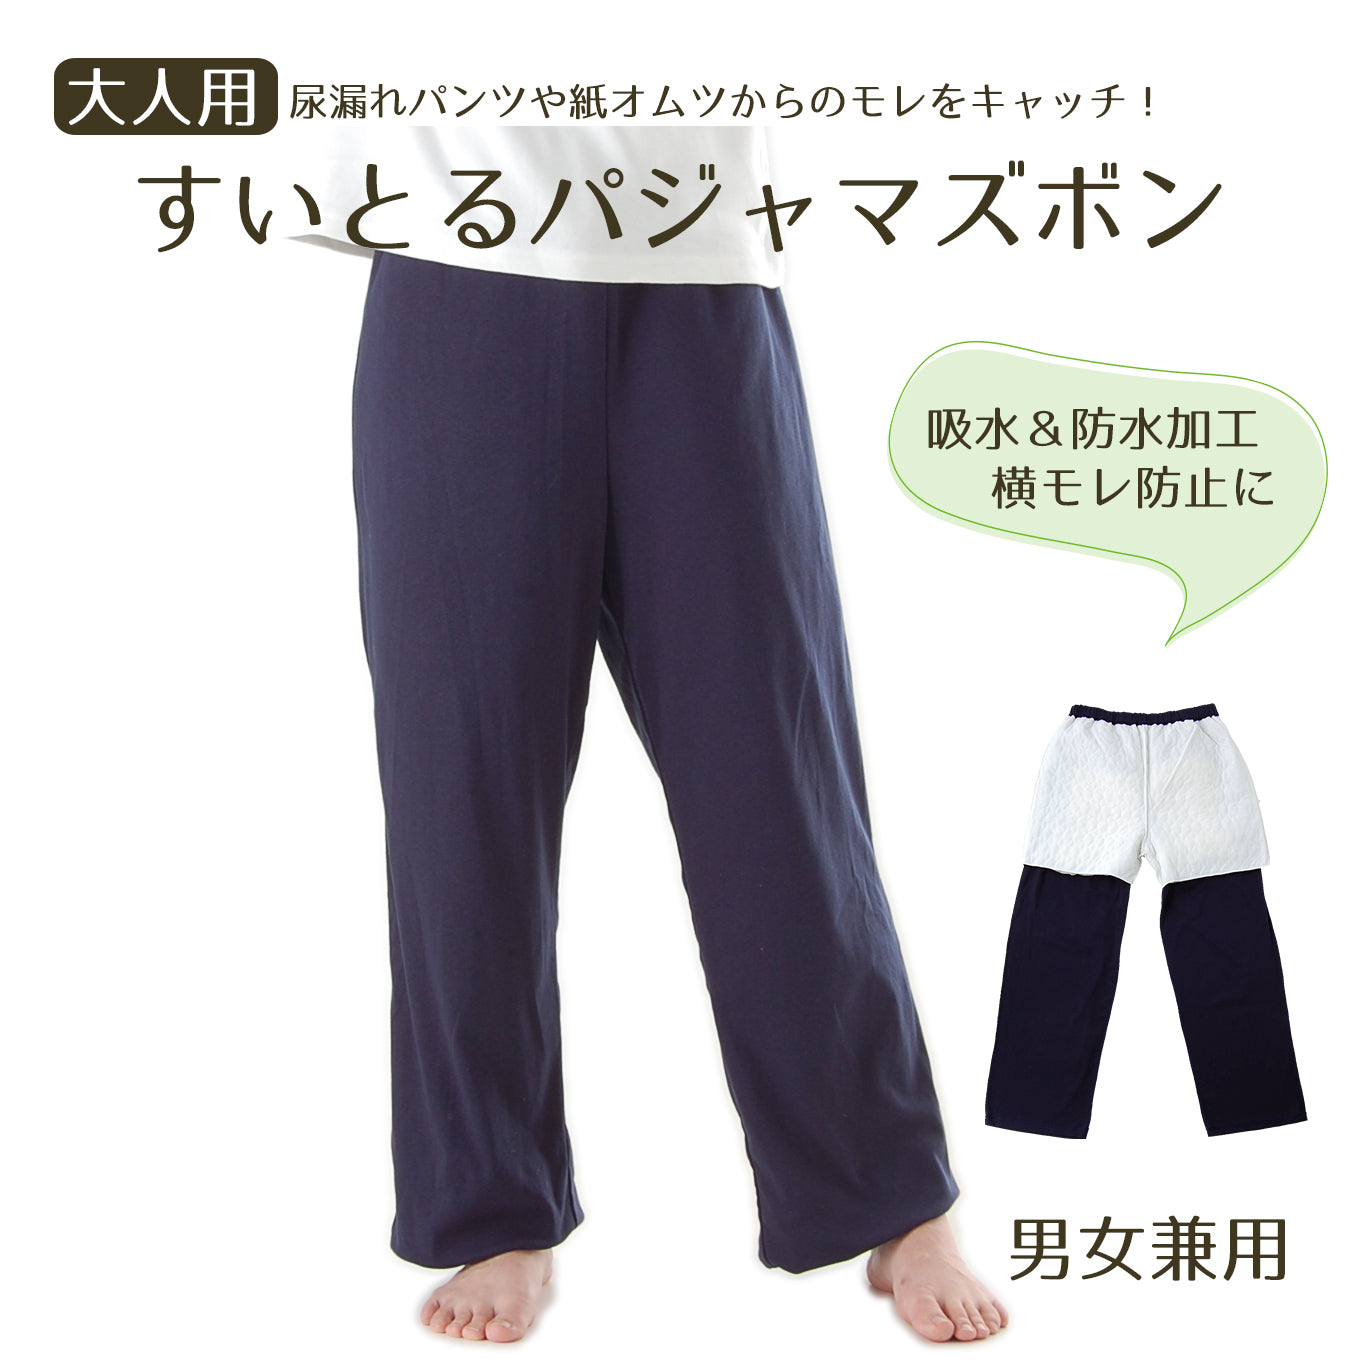 【60cc】日本製 すいとるパジャマ ズボン(下だけ_男女兼用)